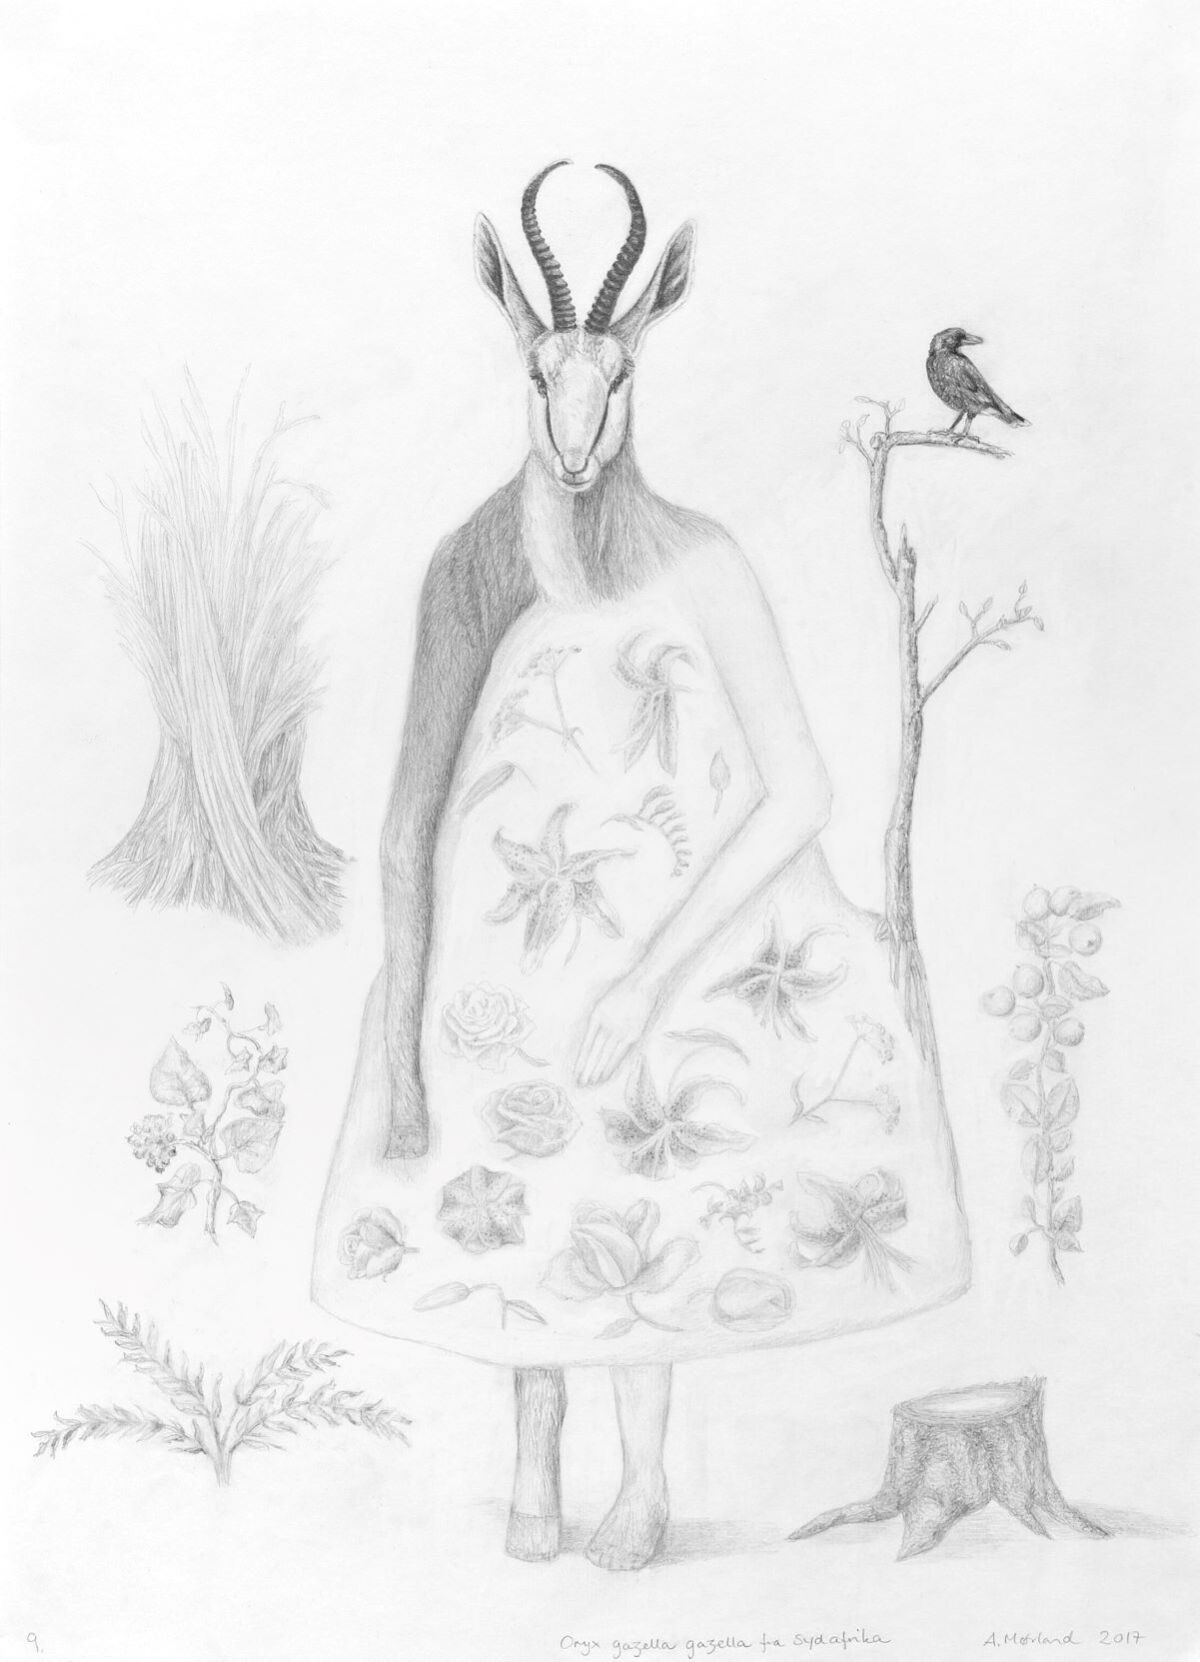 Tegning av en bukk som står på to ben. På kroppen har den en blomsterkjole. Illustrasjon.